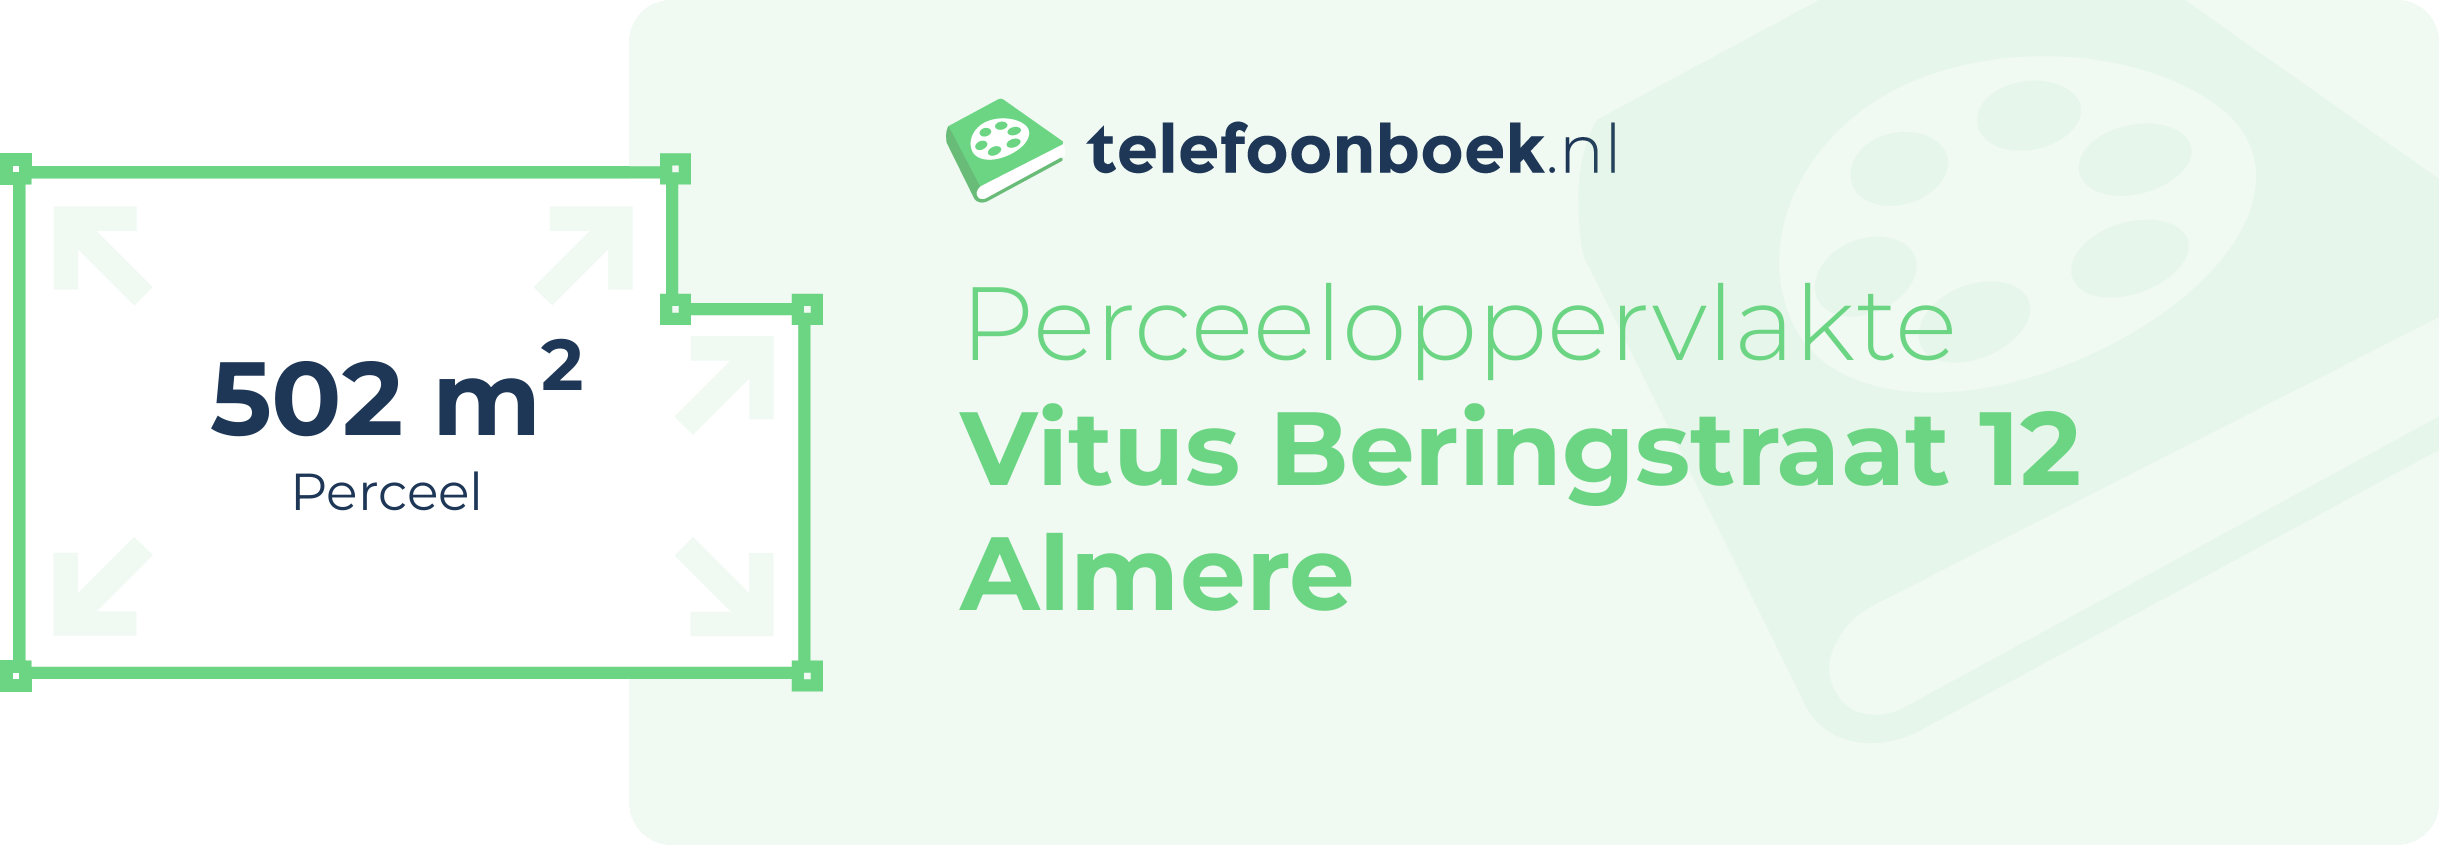 Perceeloppervlakte Vitus Beringstraat 12 Almere